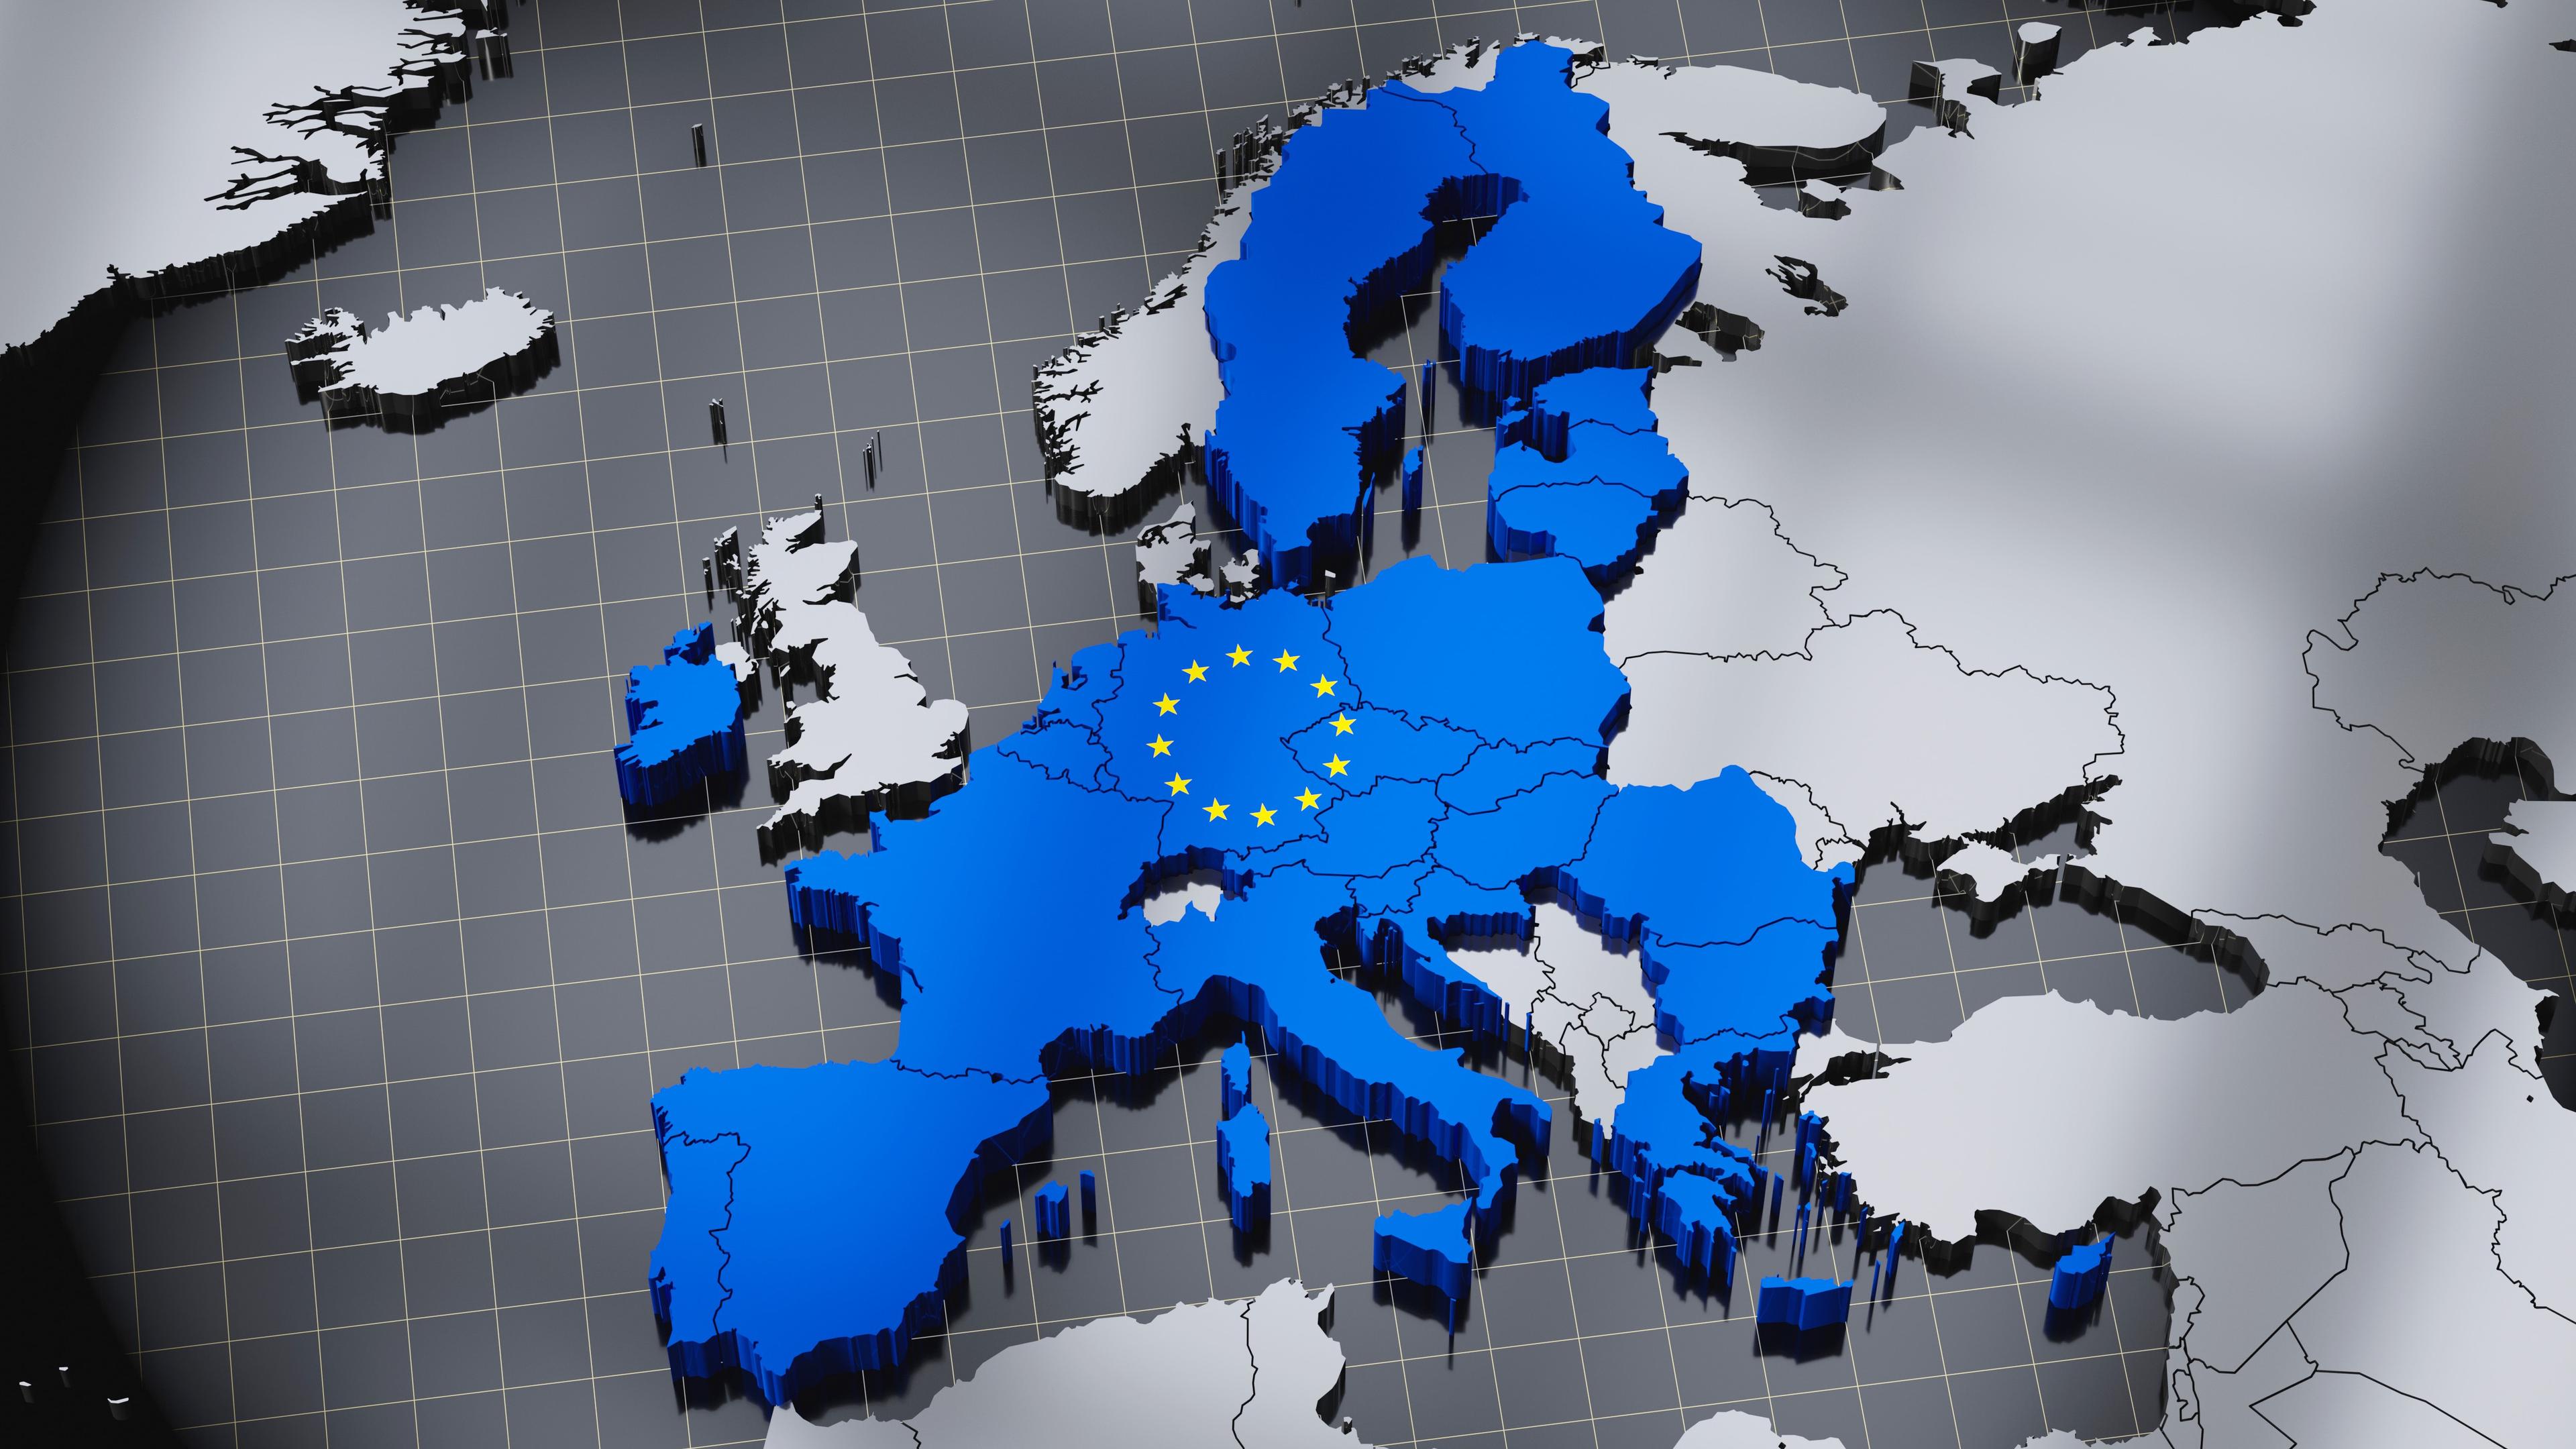 EU strävar efter att expandera med fler medlemsländer. Sverige behöver ha en demokratisk diskussion om hur vi vill utveckla unionen. Foto: Shutterstock